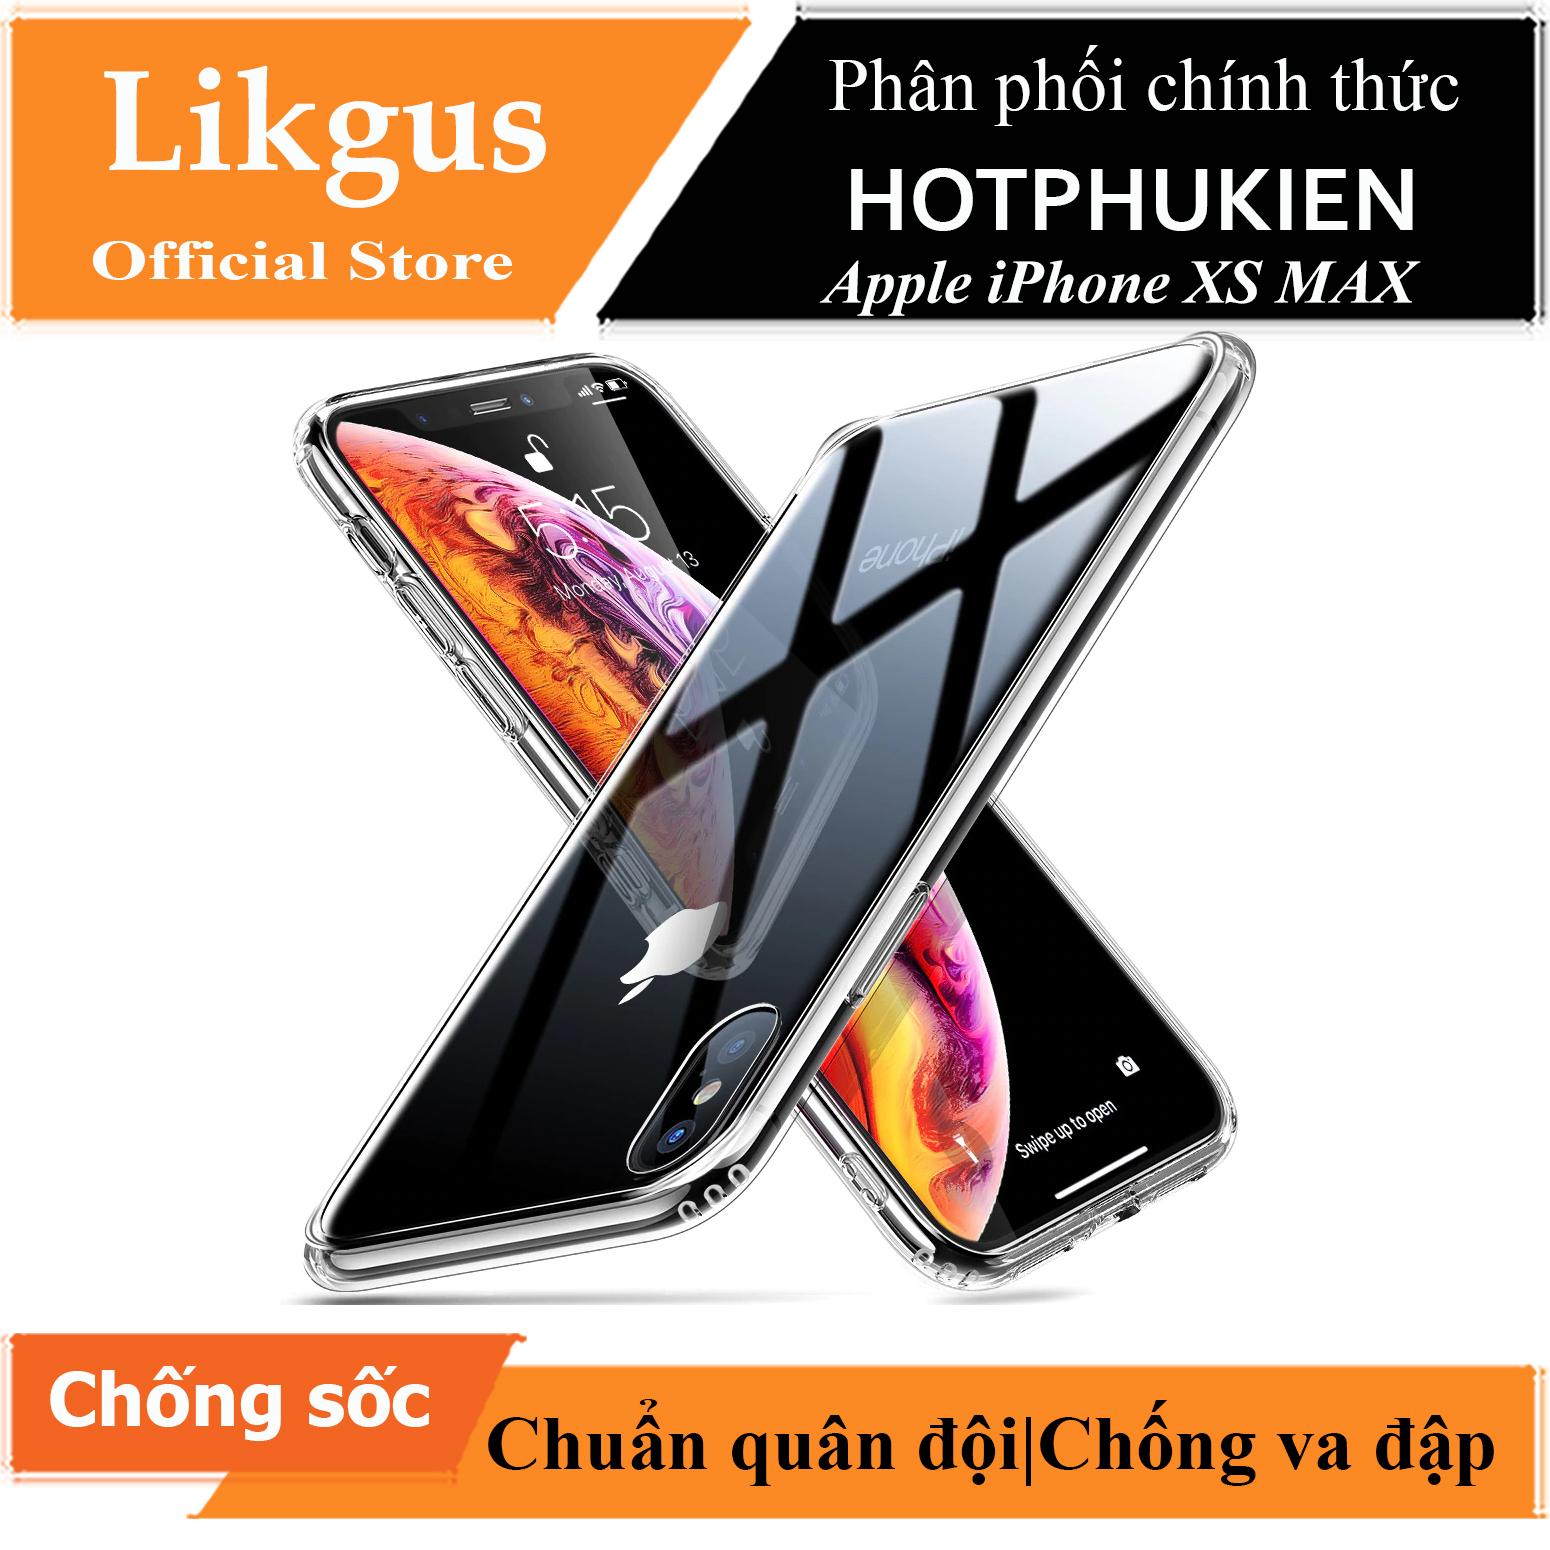 Ốp lưng chống sốc trong suốt cho iPhone Xs Max hiệu Likgus Crashproof